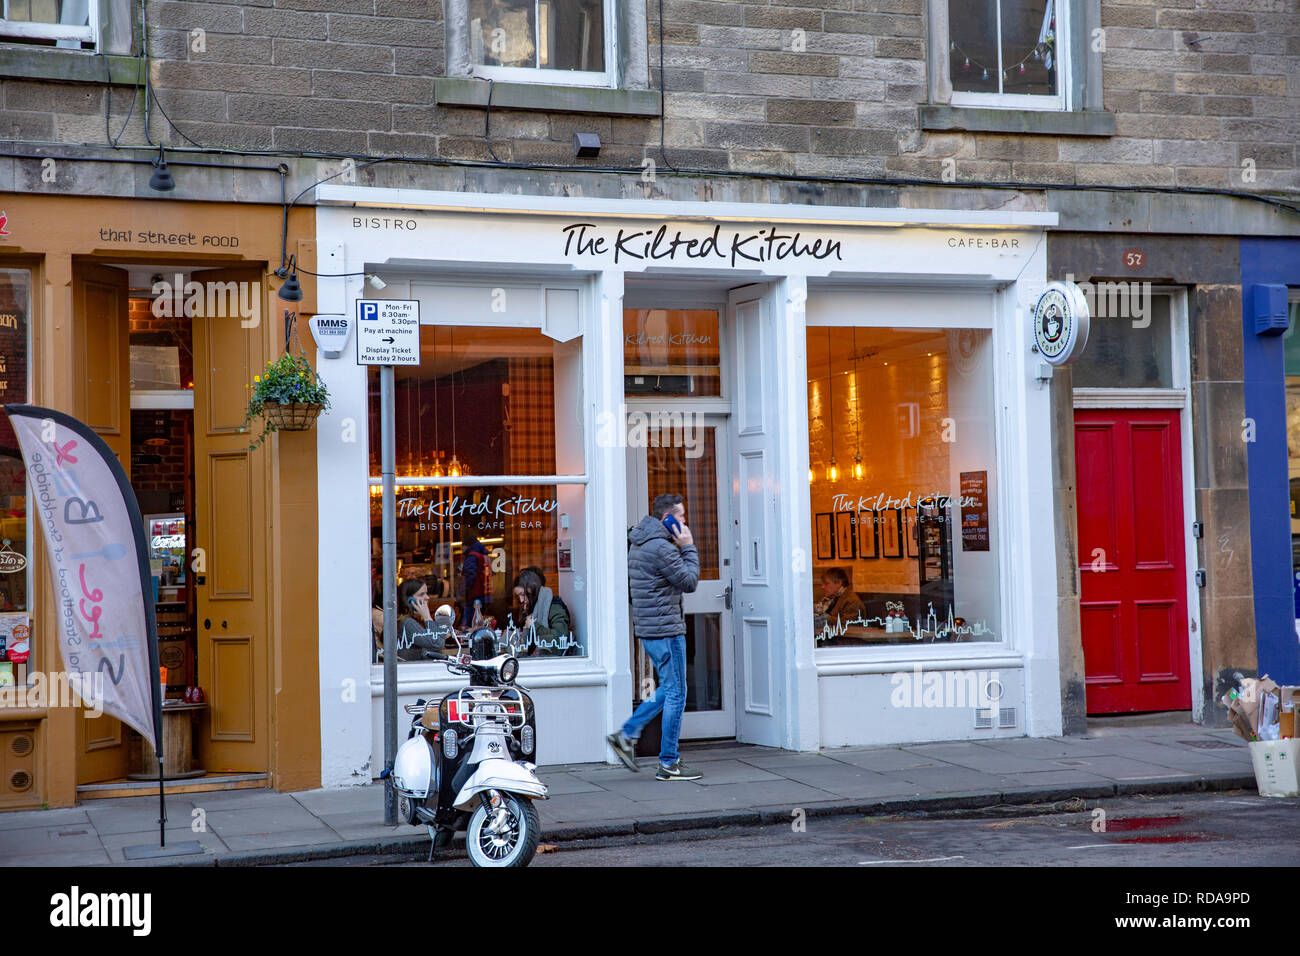 The Kitchen Edinburgh Stock Photos & The Kitchen Edinburgh Stock Images